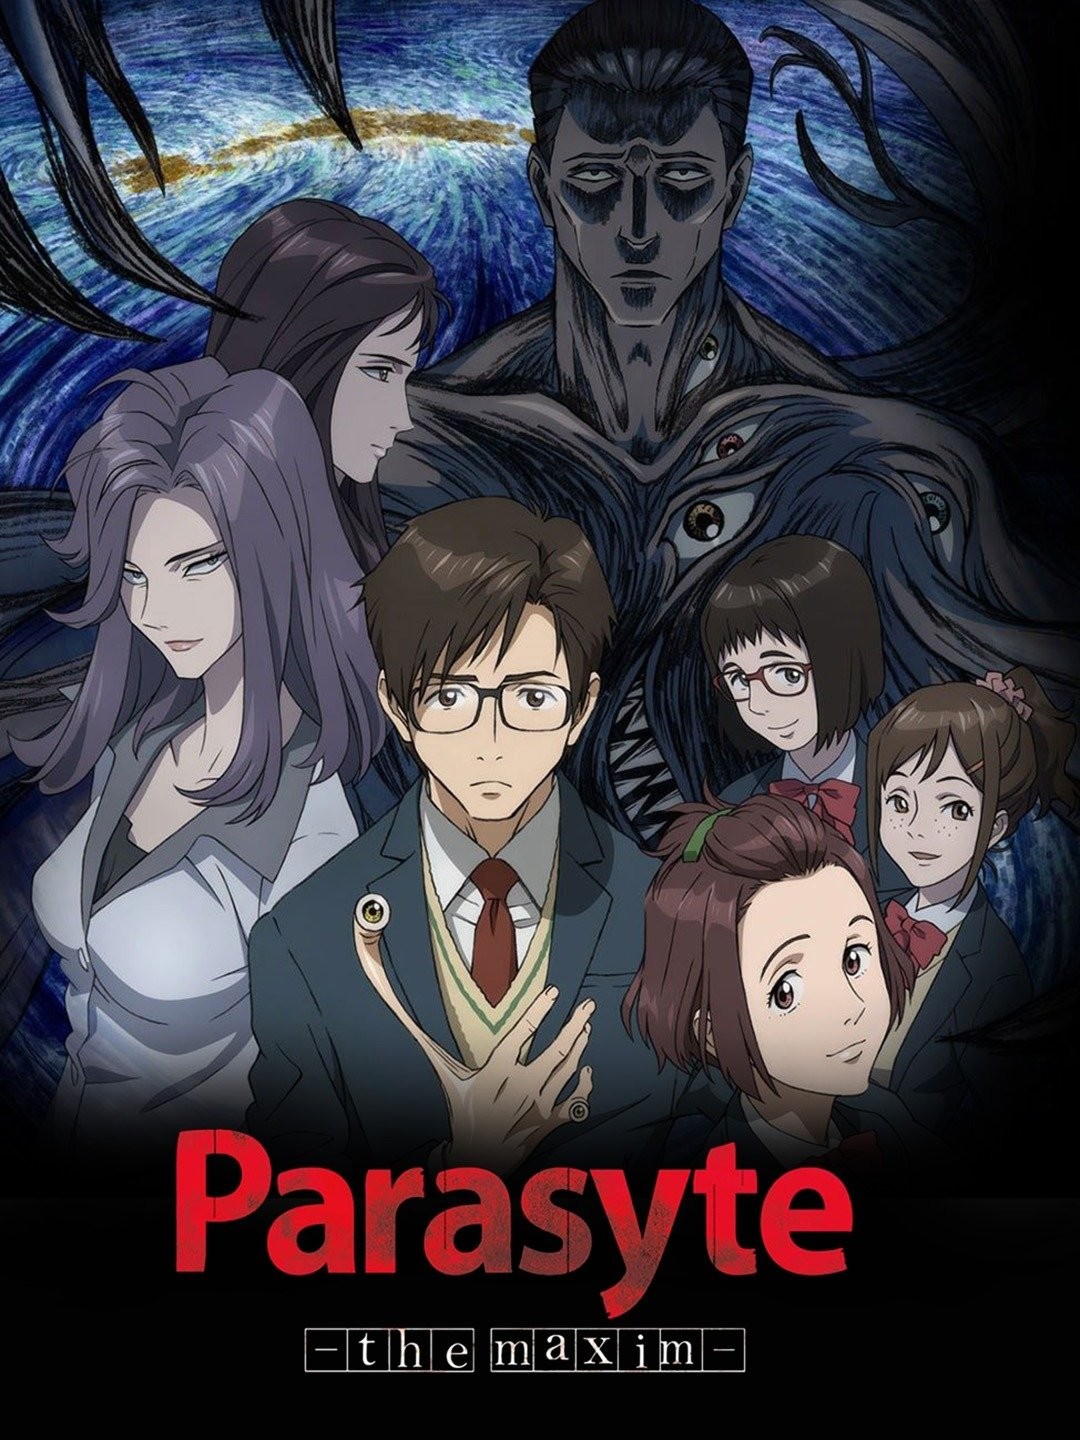 Parasyte Season 2 Release Date 